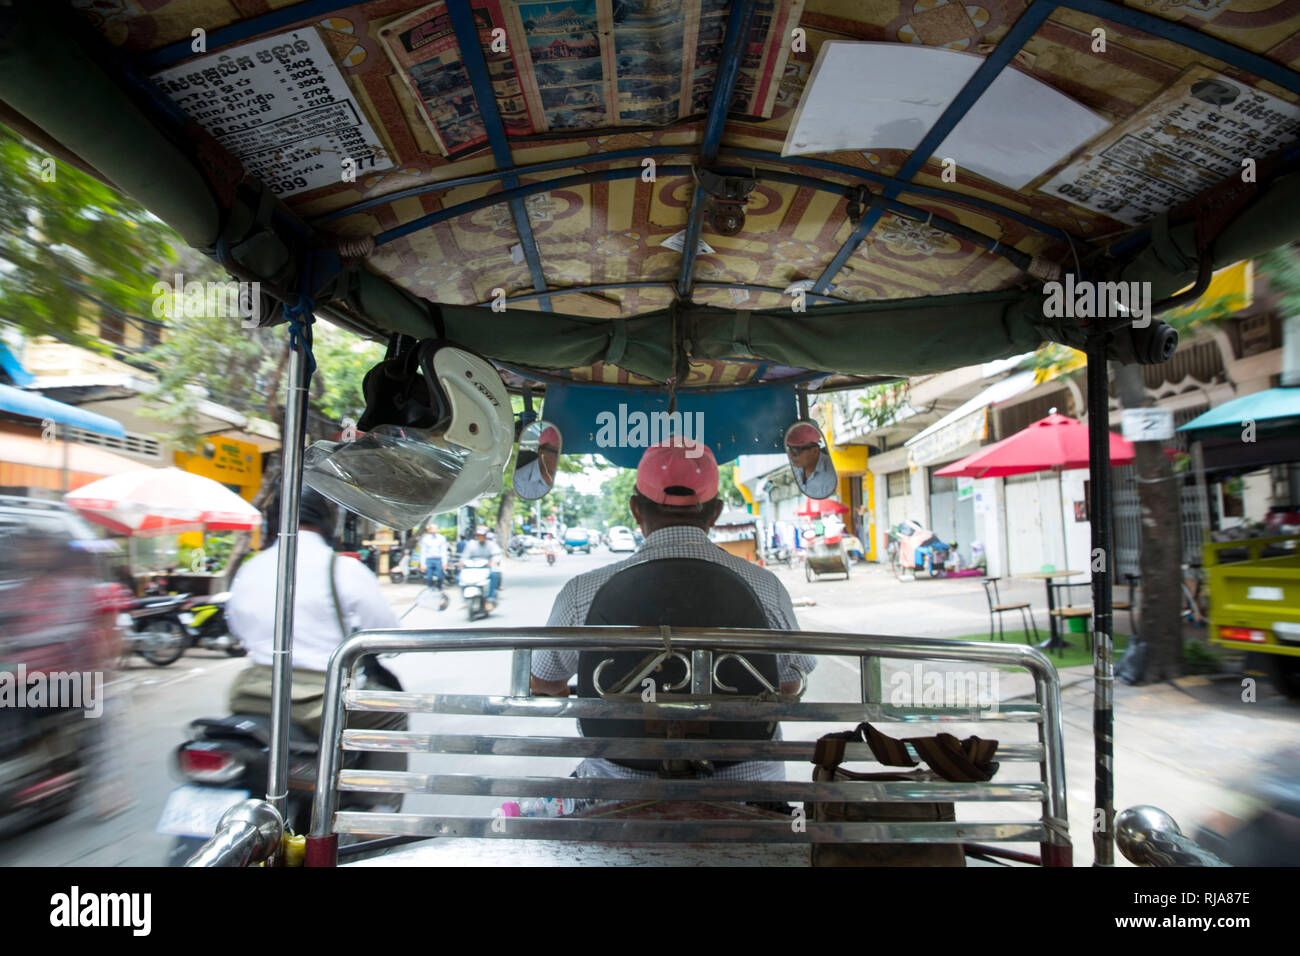 Kambodscha, Phnom Penh, Straßenszene, fahrt in einem Tuk Tuk Taxi Stock Photo